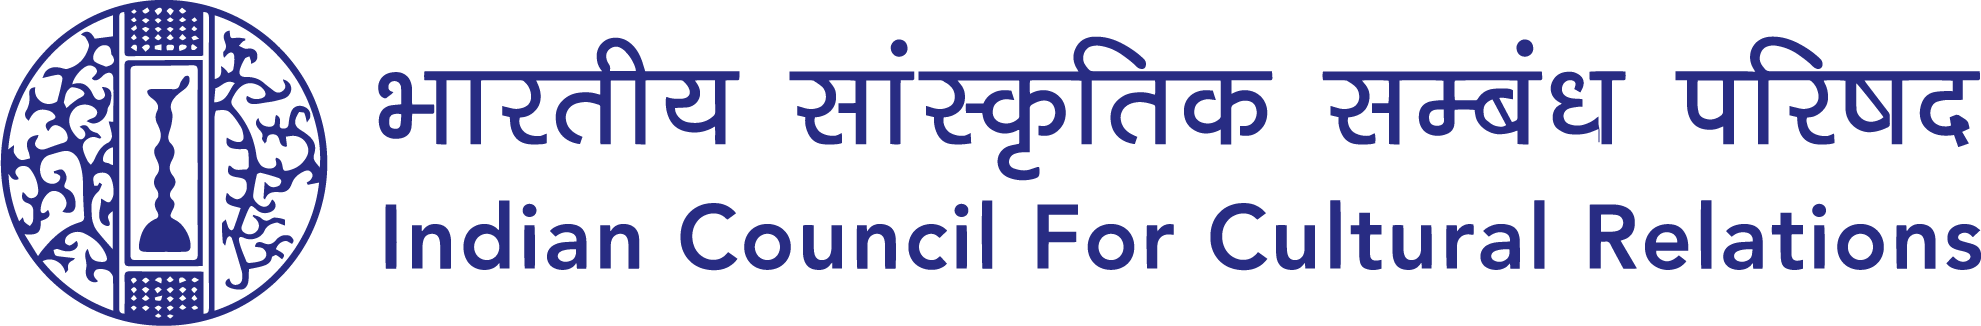 भारतीय सांस्कृतिक संबंध परिषद  की आधिकारिक वेबसाइट,भारत सरकार